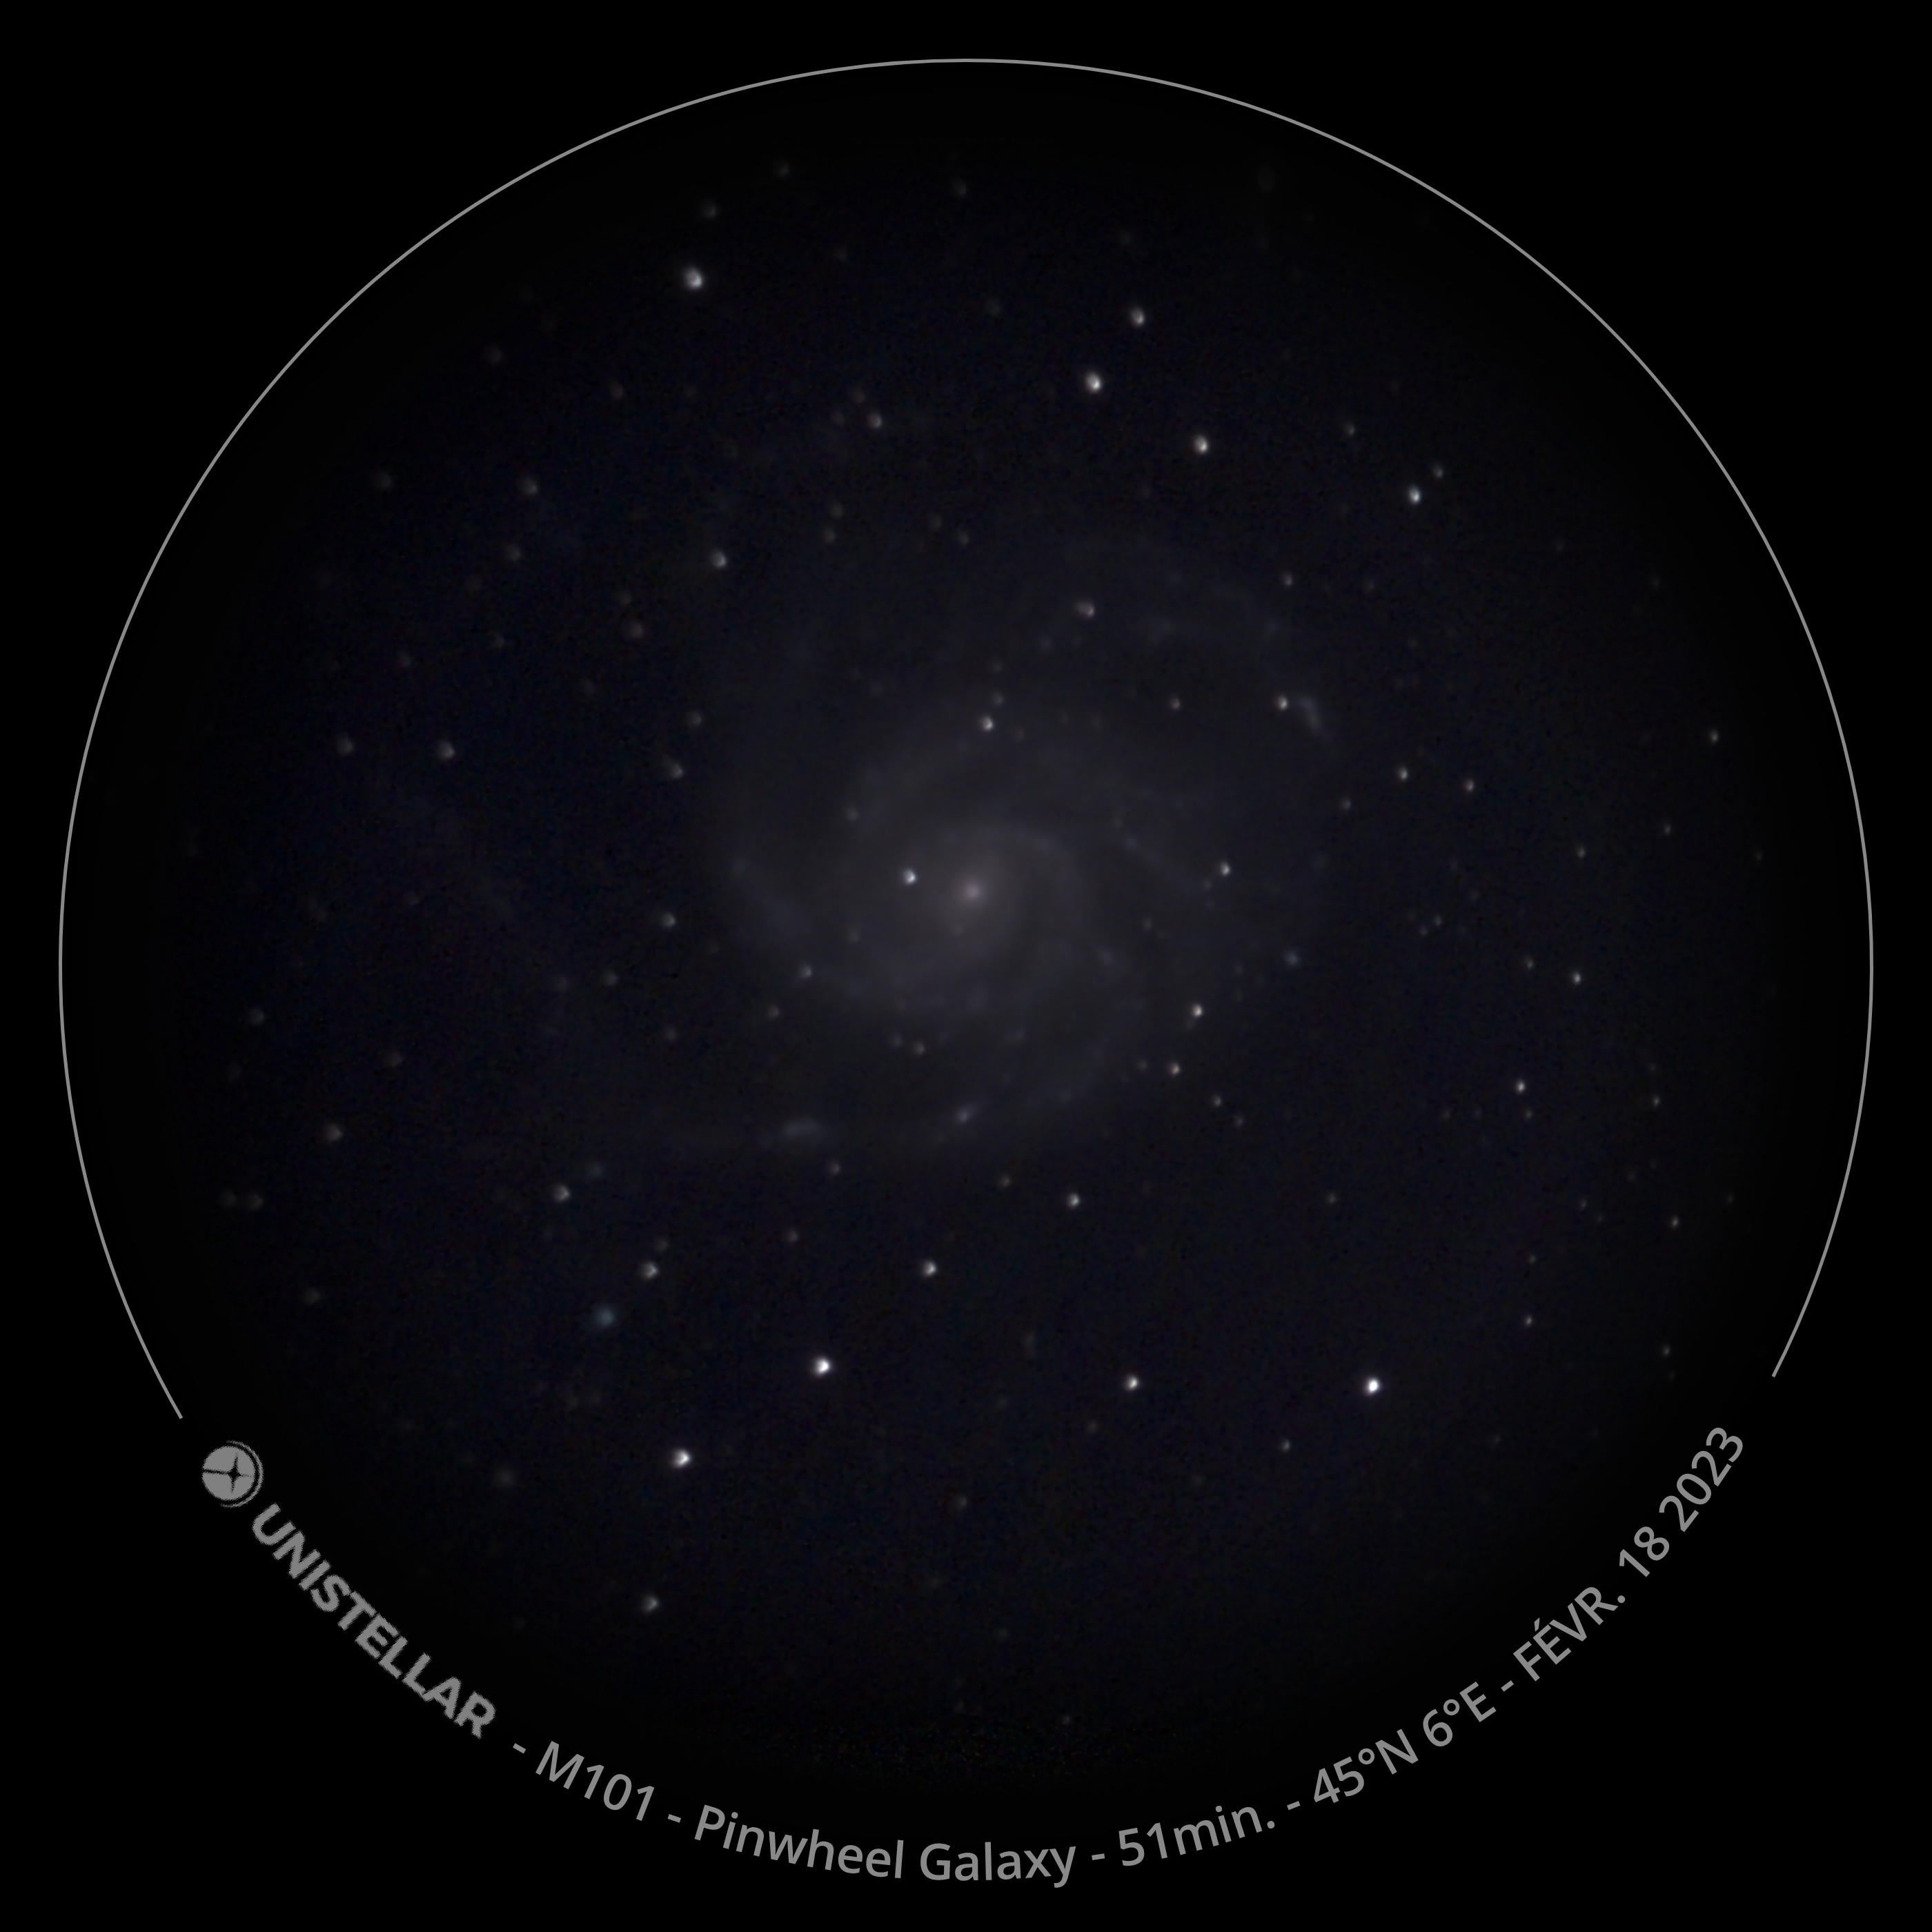 2023-02-17_M101 Pinwheel Galaxy_51min.jpg